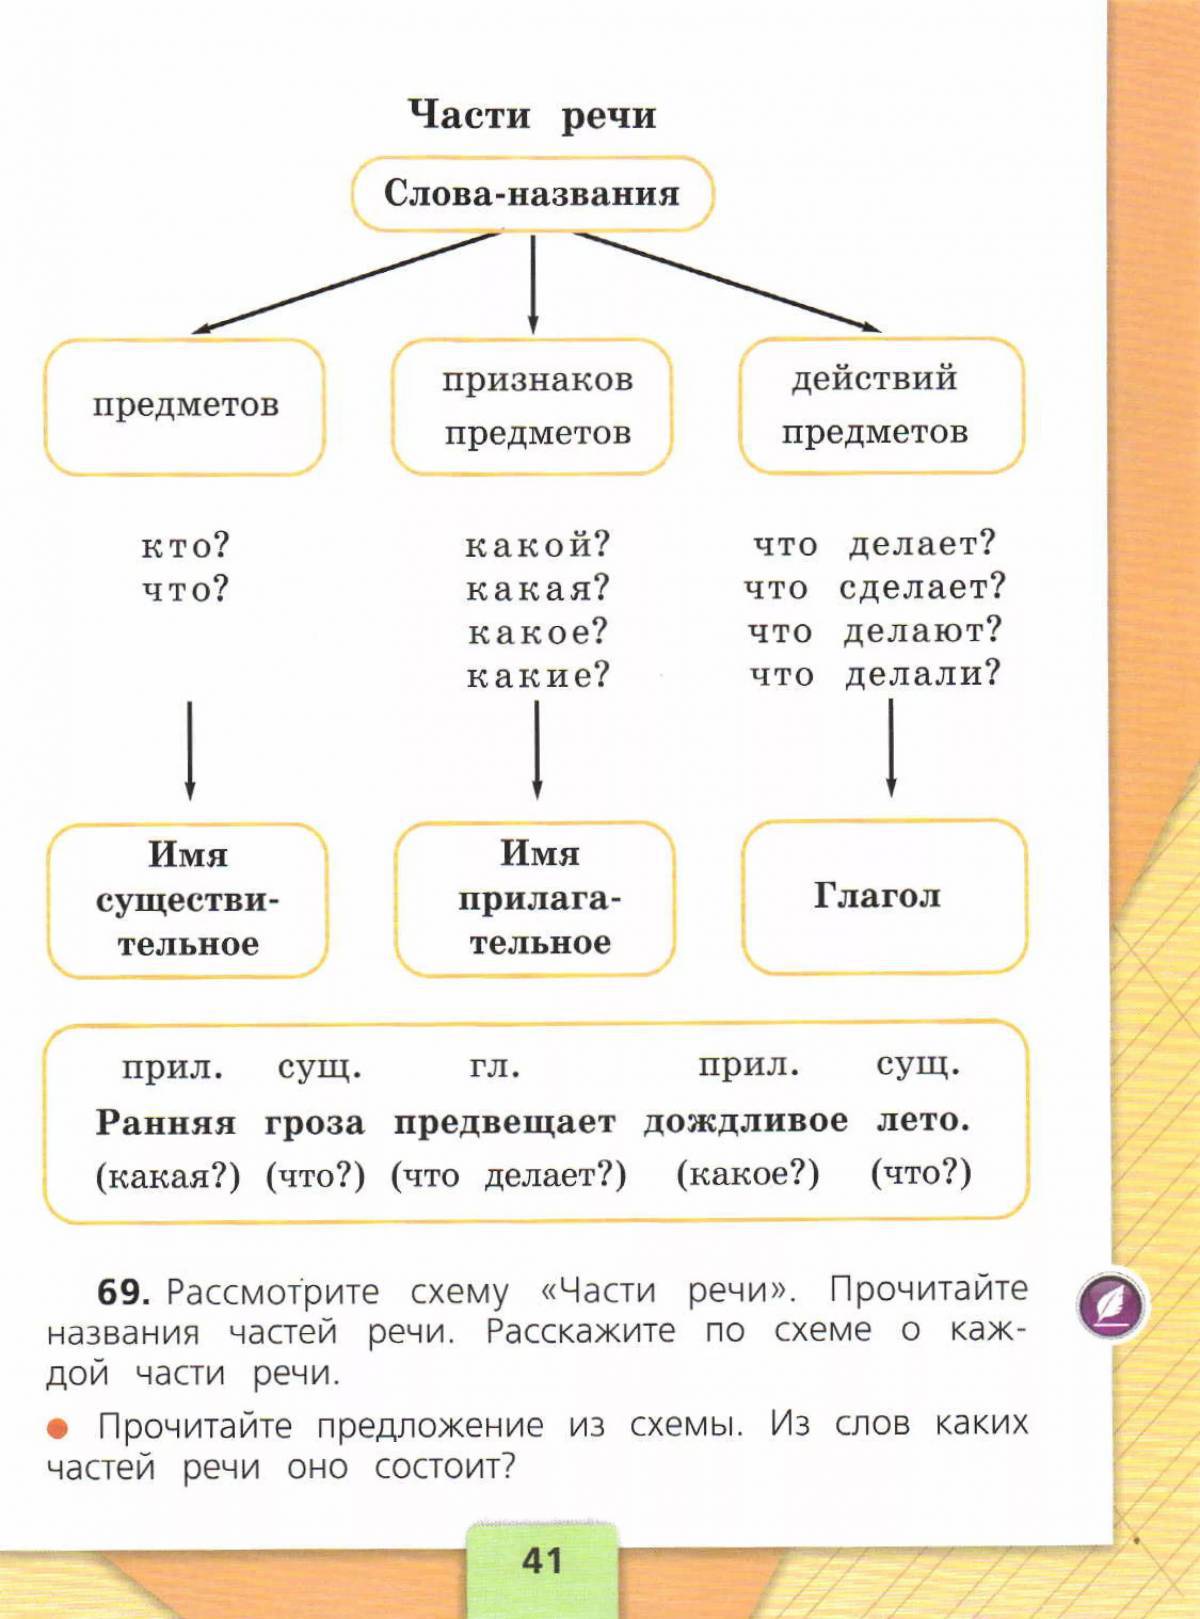 Части речи 2 класс по русскому языку #3